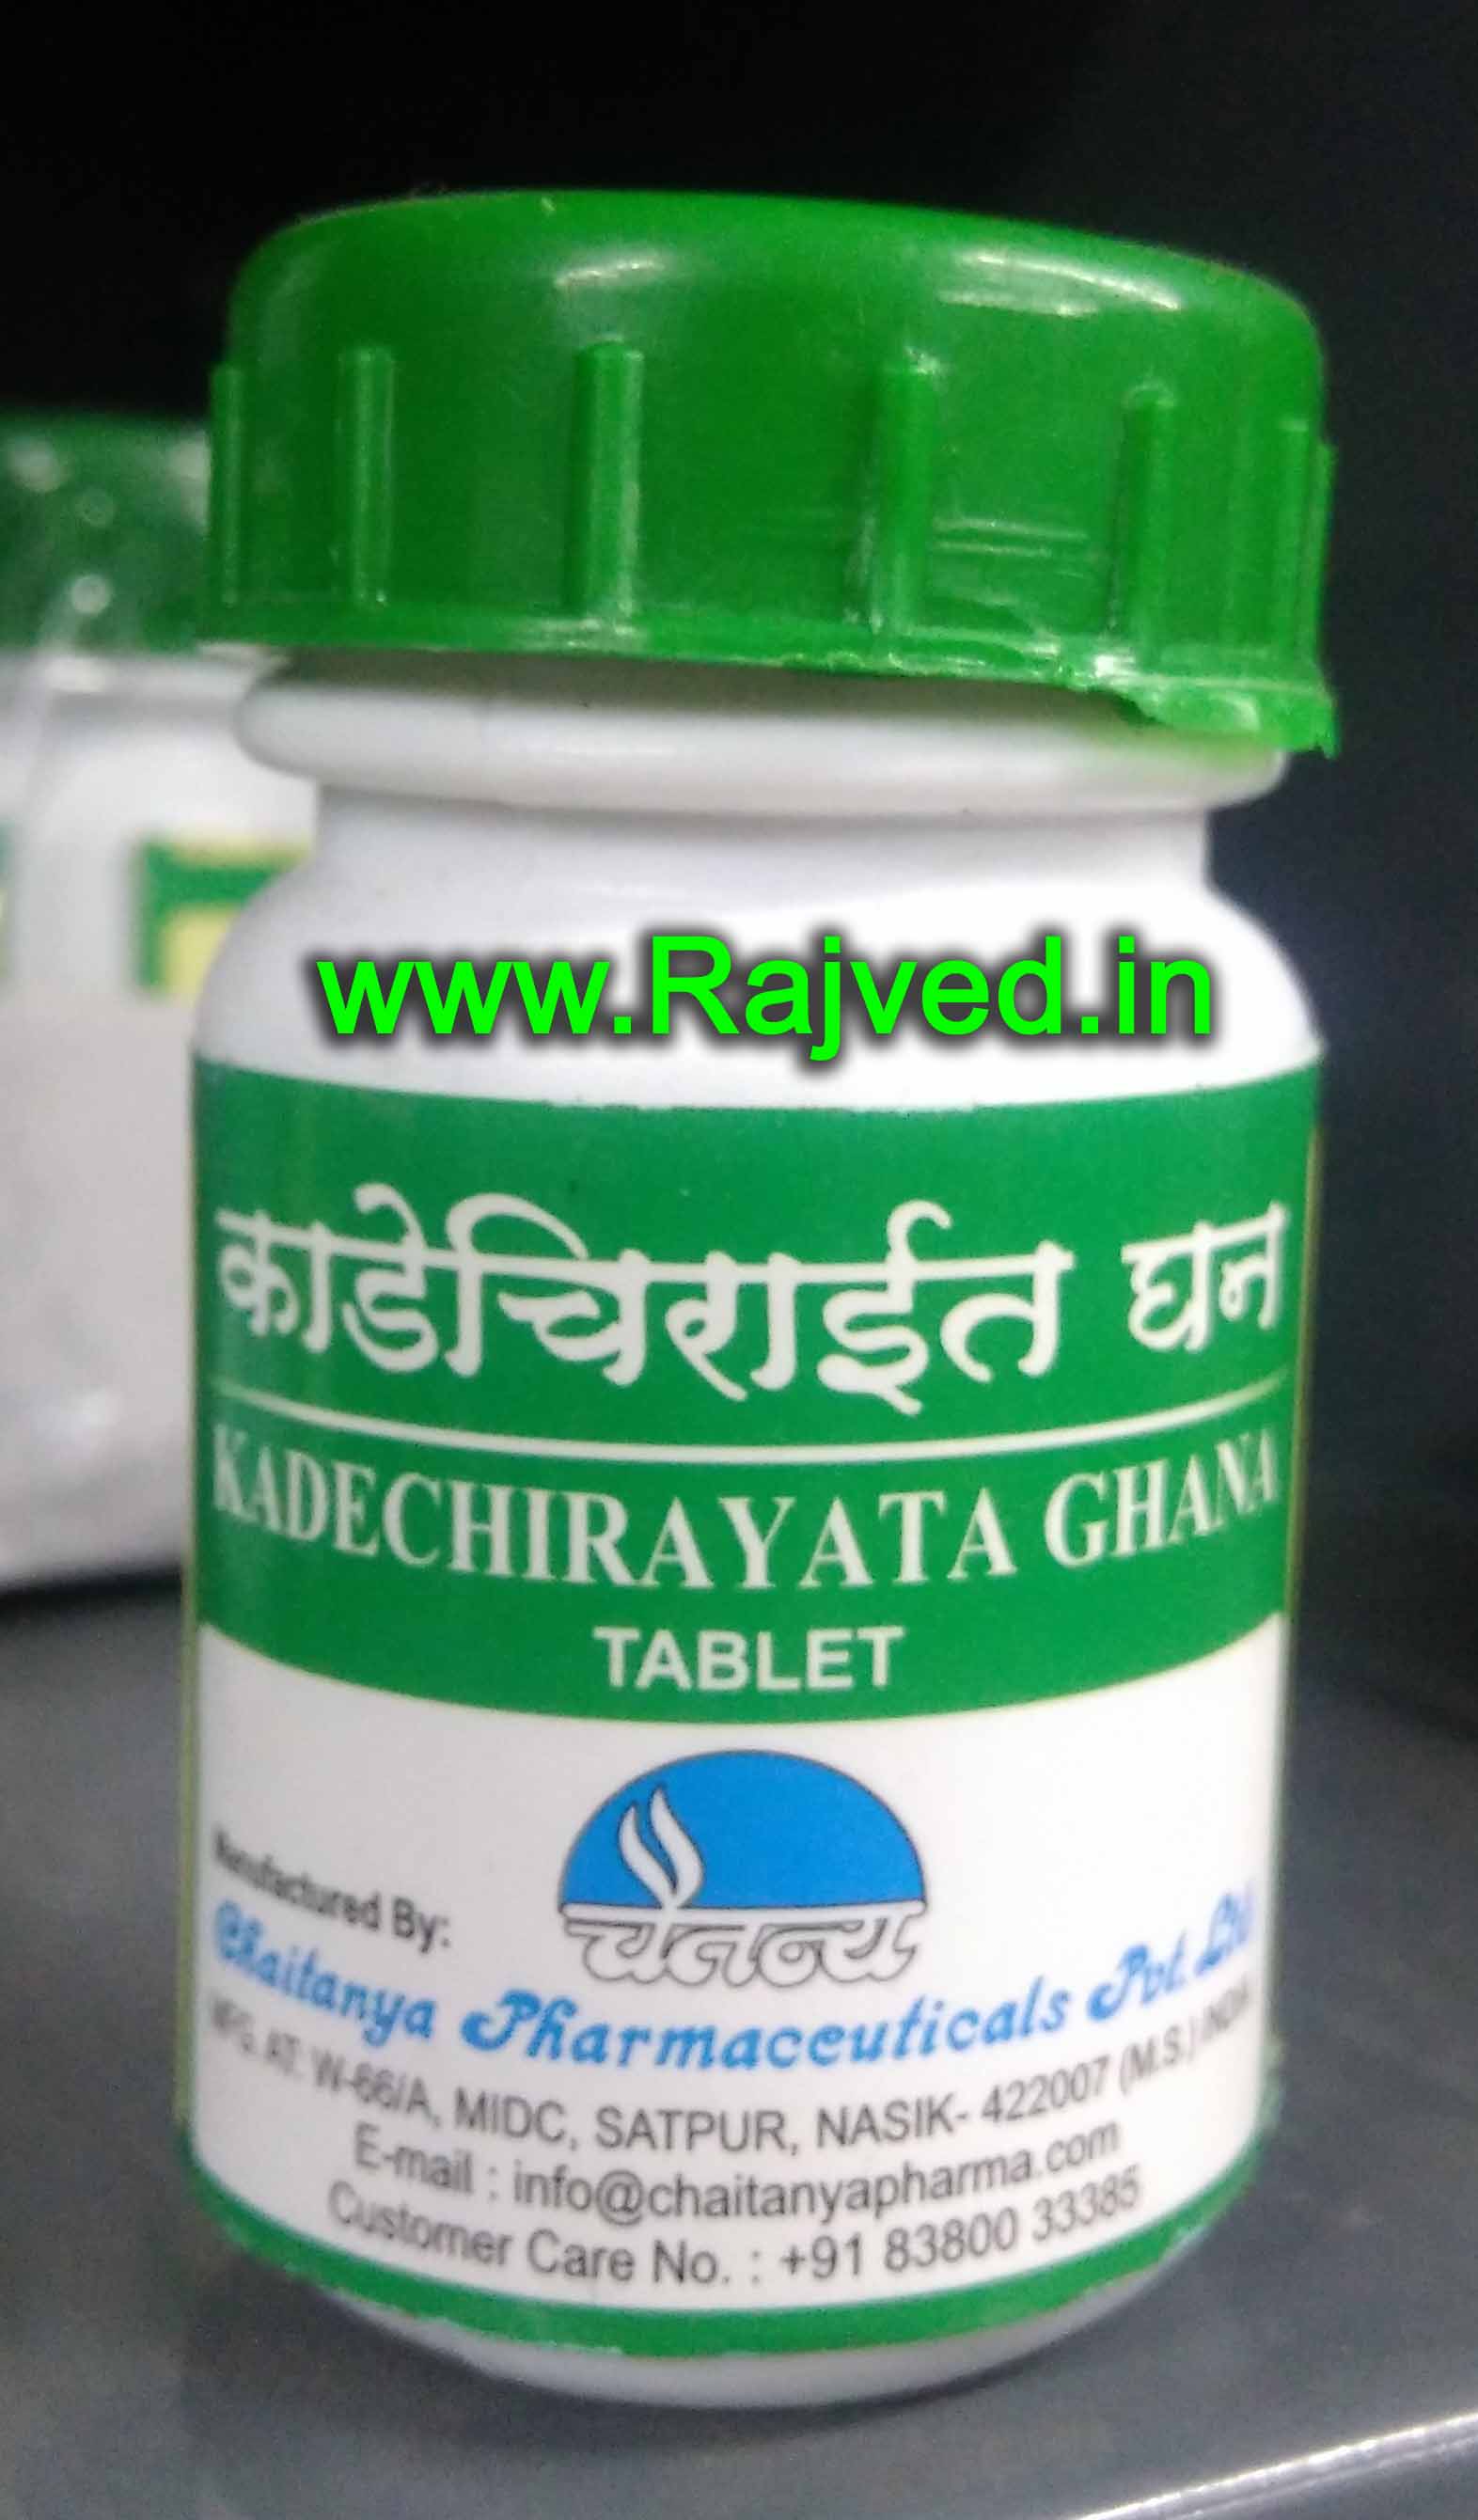 kadechirayata ghana 500tab upto 20% off free shipping chaitanya pharmaceuticals